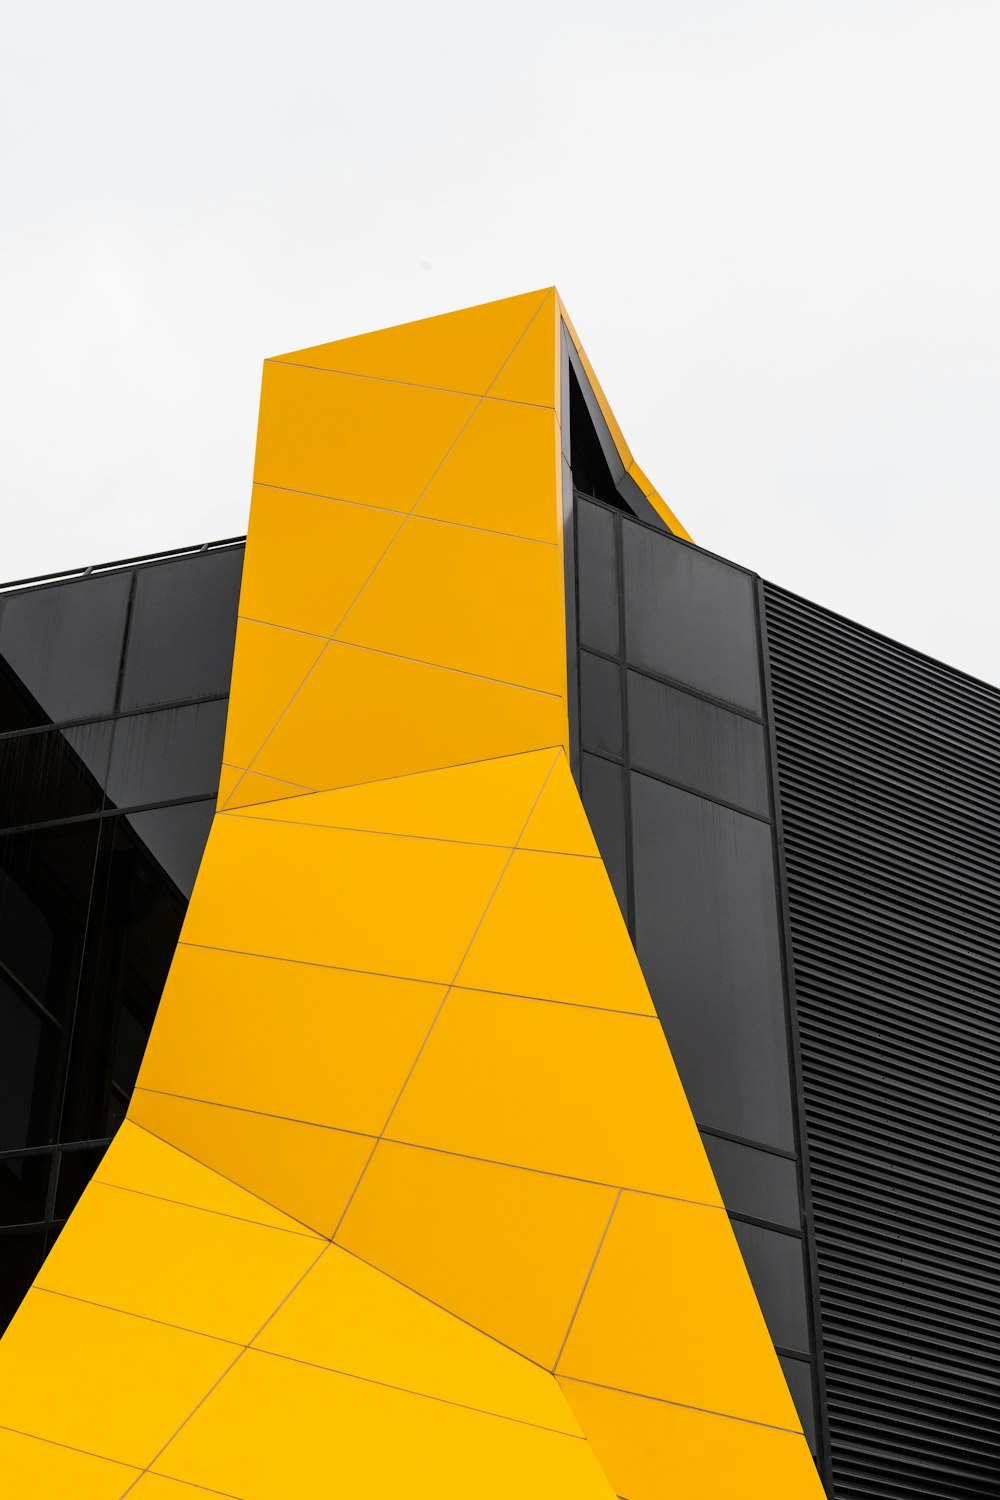 Edificio de vidrio amarillo y negro